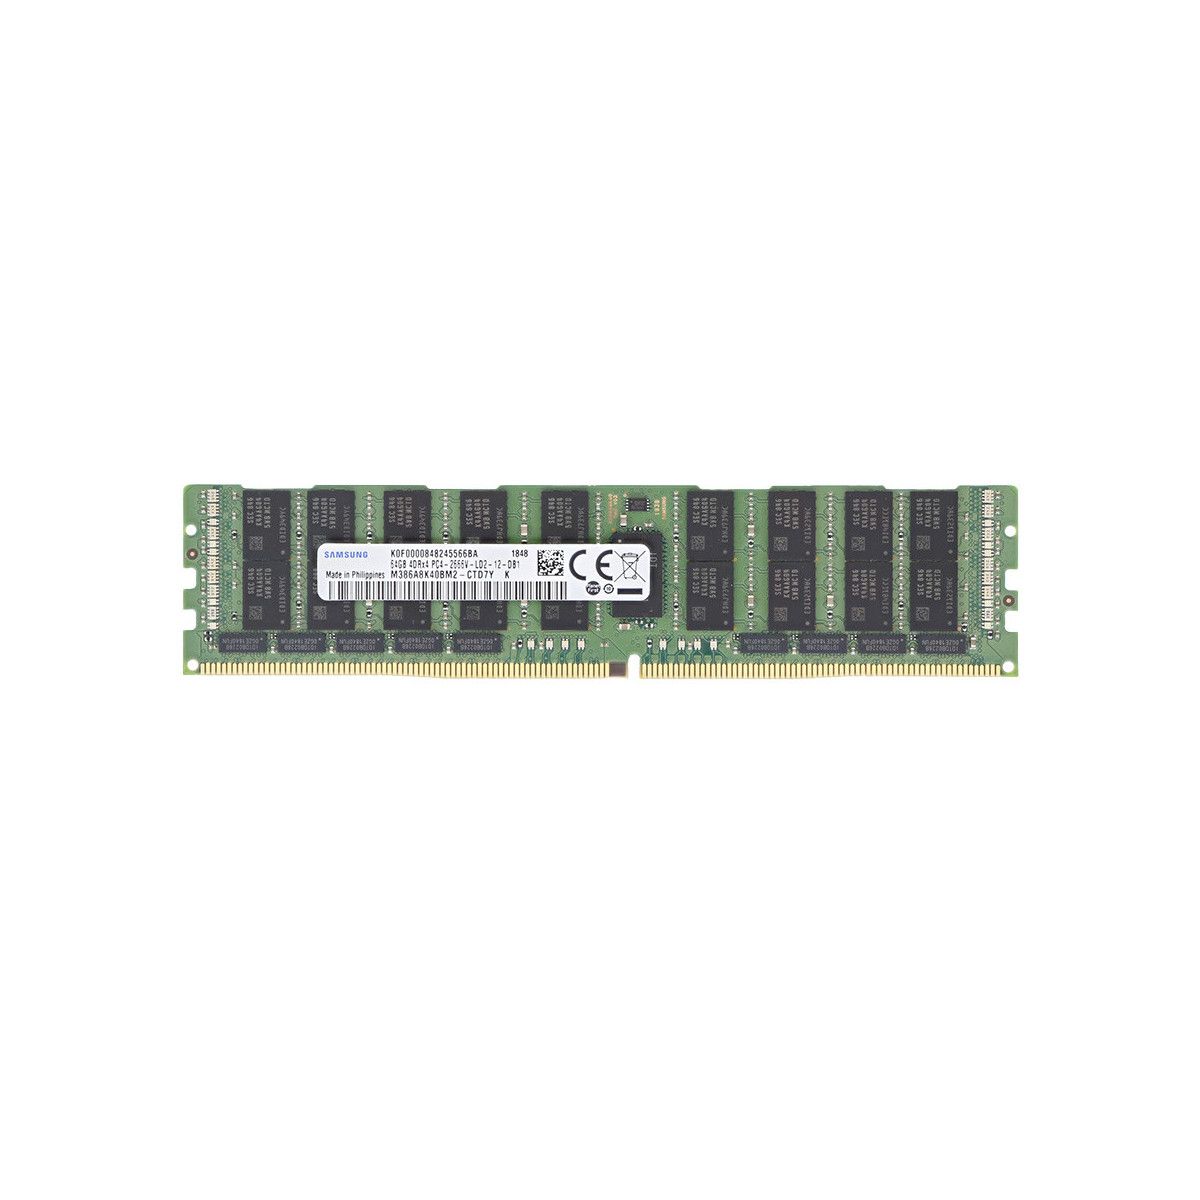 A8711890-MS - Memstar 1x 64GB DDR4-2400 LRDIMM PC4-19200T-L - Memorie OEM compatibilă cu Mem-Star 1 - Memstar 